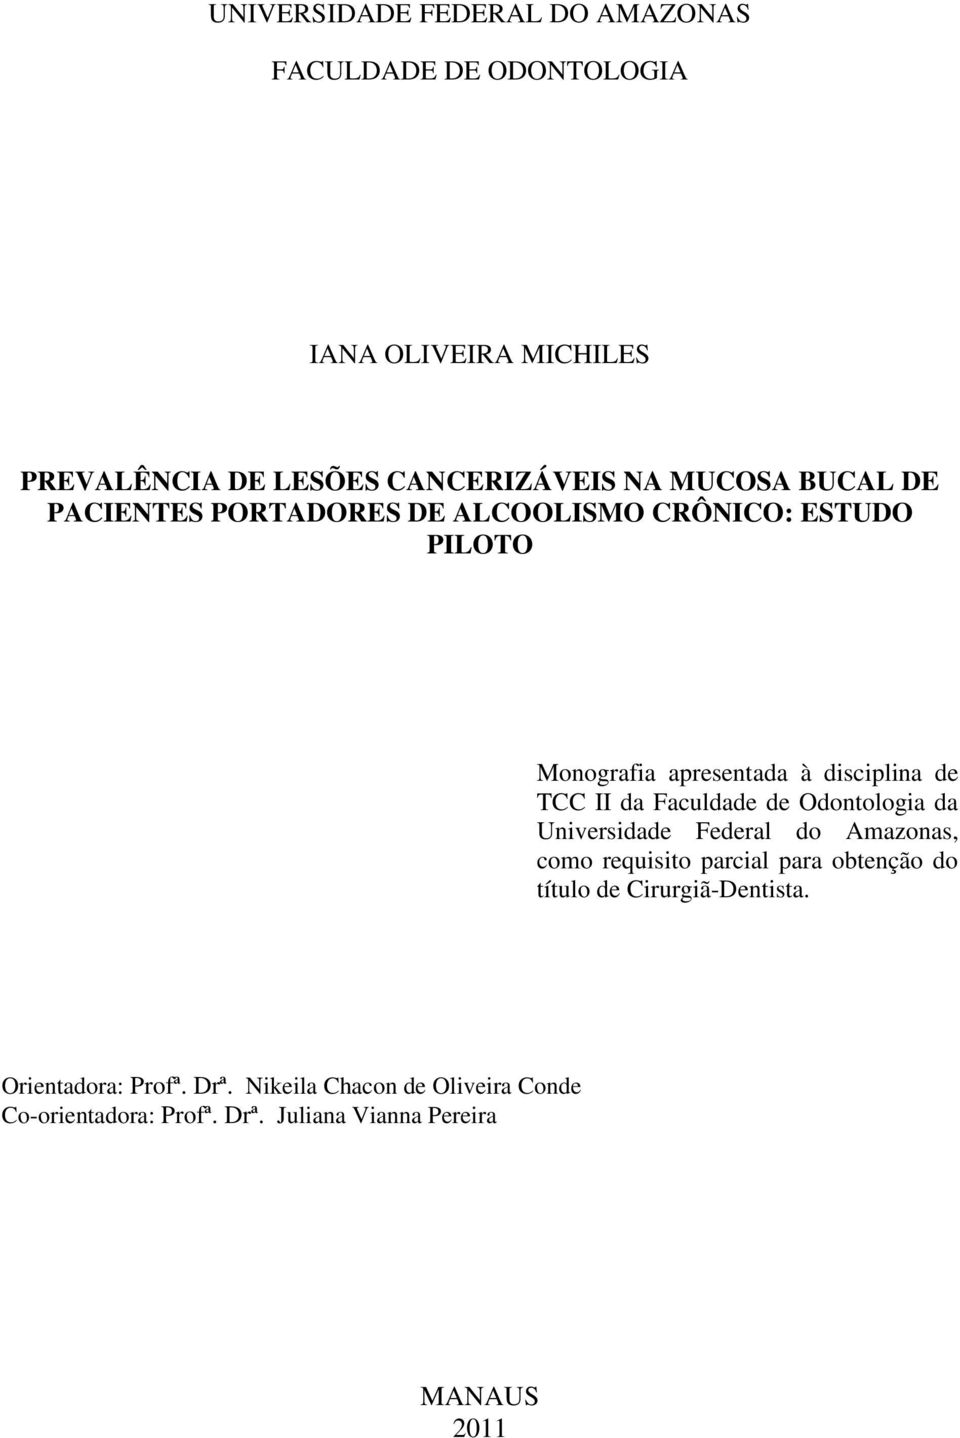 Faculdade de Odontologia da Universidade Federal do Amazonas, como requisito parcial para obtenção do título de